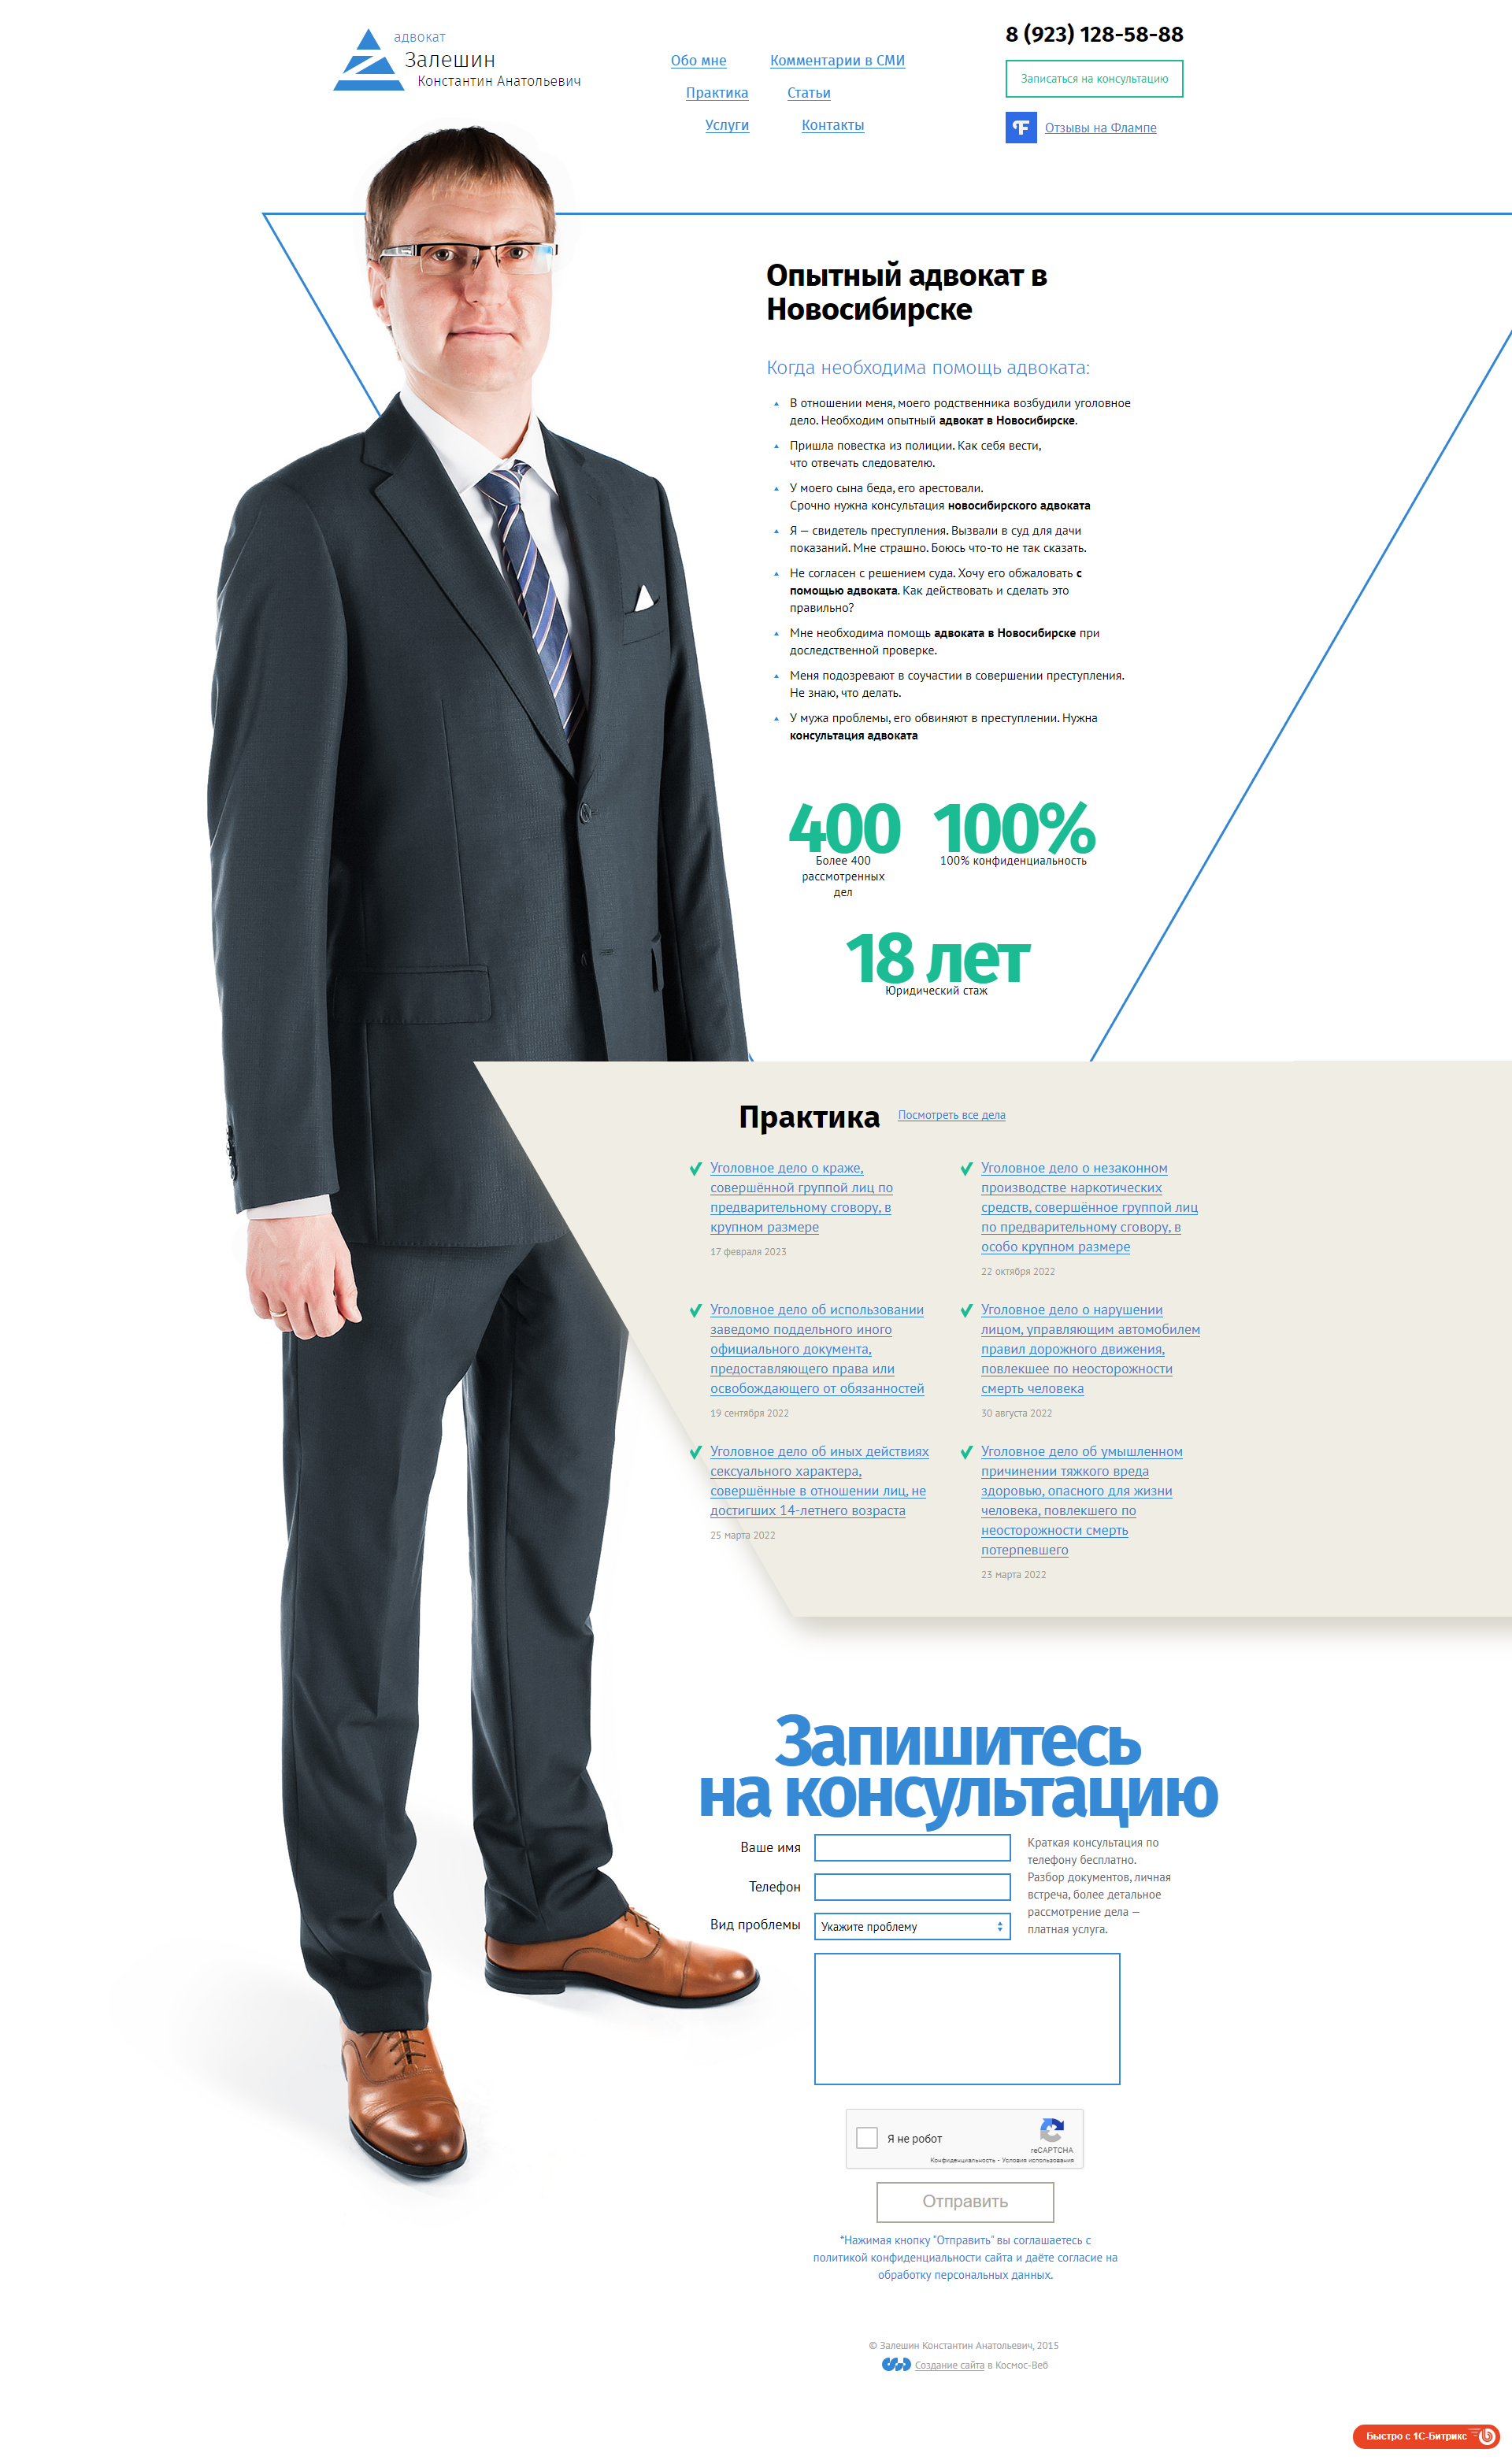 Пример zaleshin.ru сайта из рекламной выдачи